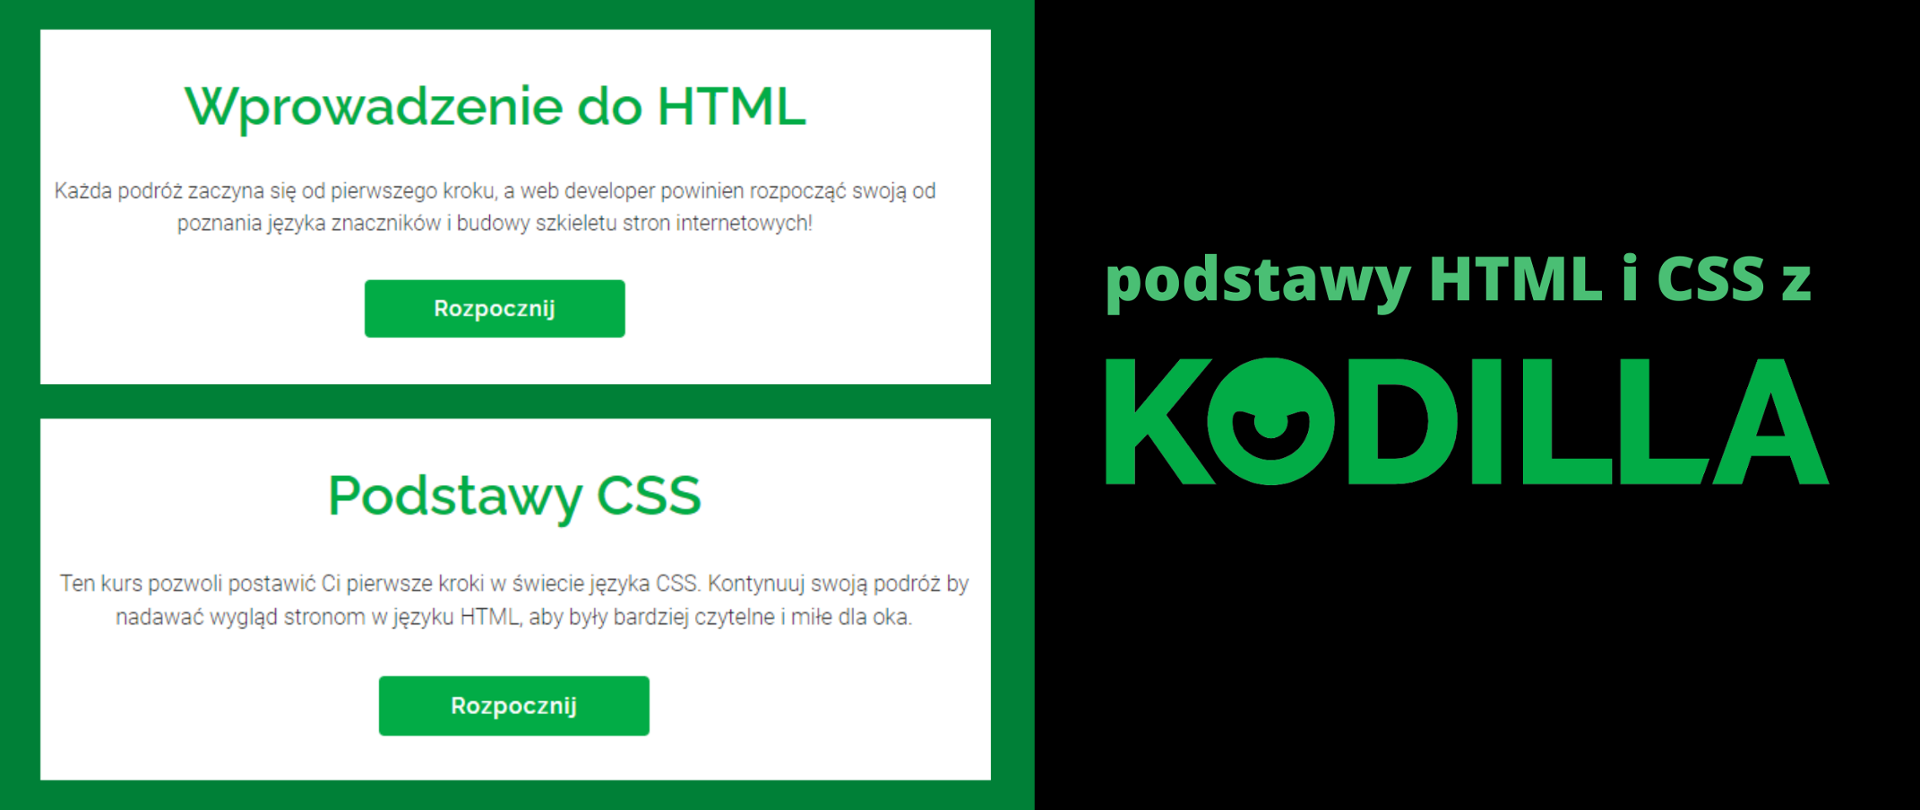 Grafika ma kolor zielono-czarny. Na zielonym tle widać dwa białe kafelki: na pierwszym napis: "Wprowadzenie do HTML. Każda podróż zaczyna się od pierwszego kroku, web developer powinien zacząć swoją od poznania języków i budowy szkieletu stron internetowych!" oraz poniżej na zielonym tle przycisk: "rozpocznij!" Druga kafelka to napis na białym tle: "Podstawy CSS. Te kurs pozwoli postawić Ci pierwsze kroki w świecie języka CSS. Kontynuuj swoją podróż by nadawać wygląd stronom w języku HTML, aby były bardziej czytelne i miłe dla oka" oraz poniżej na zielonym tle przycisk: "rozpocznij!" Z kolei druga część grafiki, na czarnym tle, to napis w kolorze zielonym: "podstawy HTML i CSS z Kodilla".